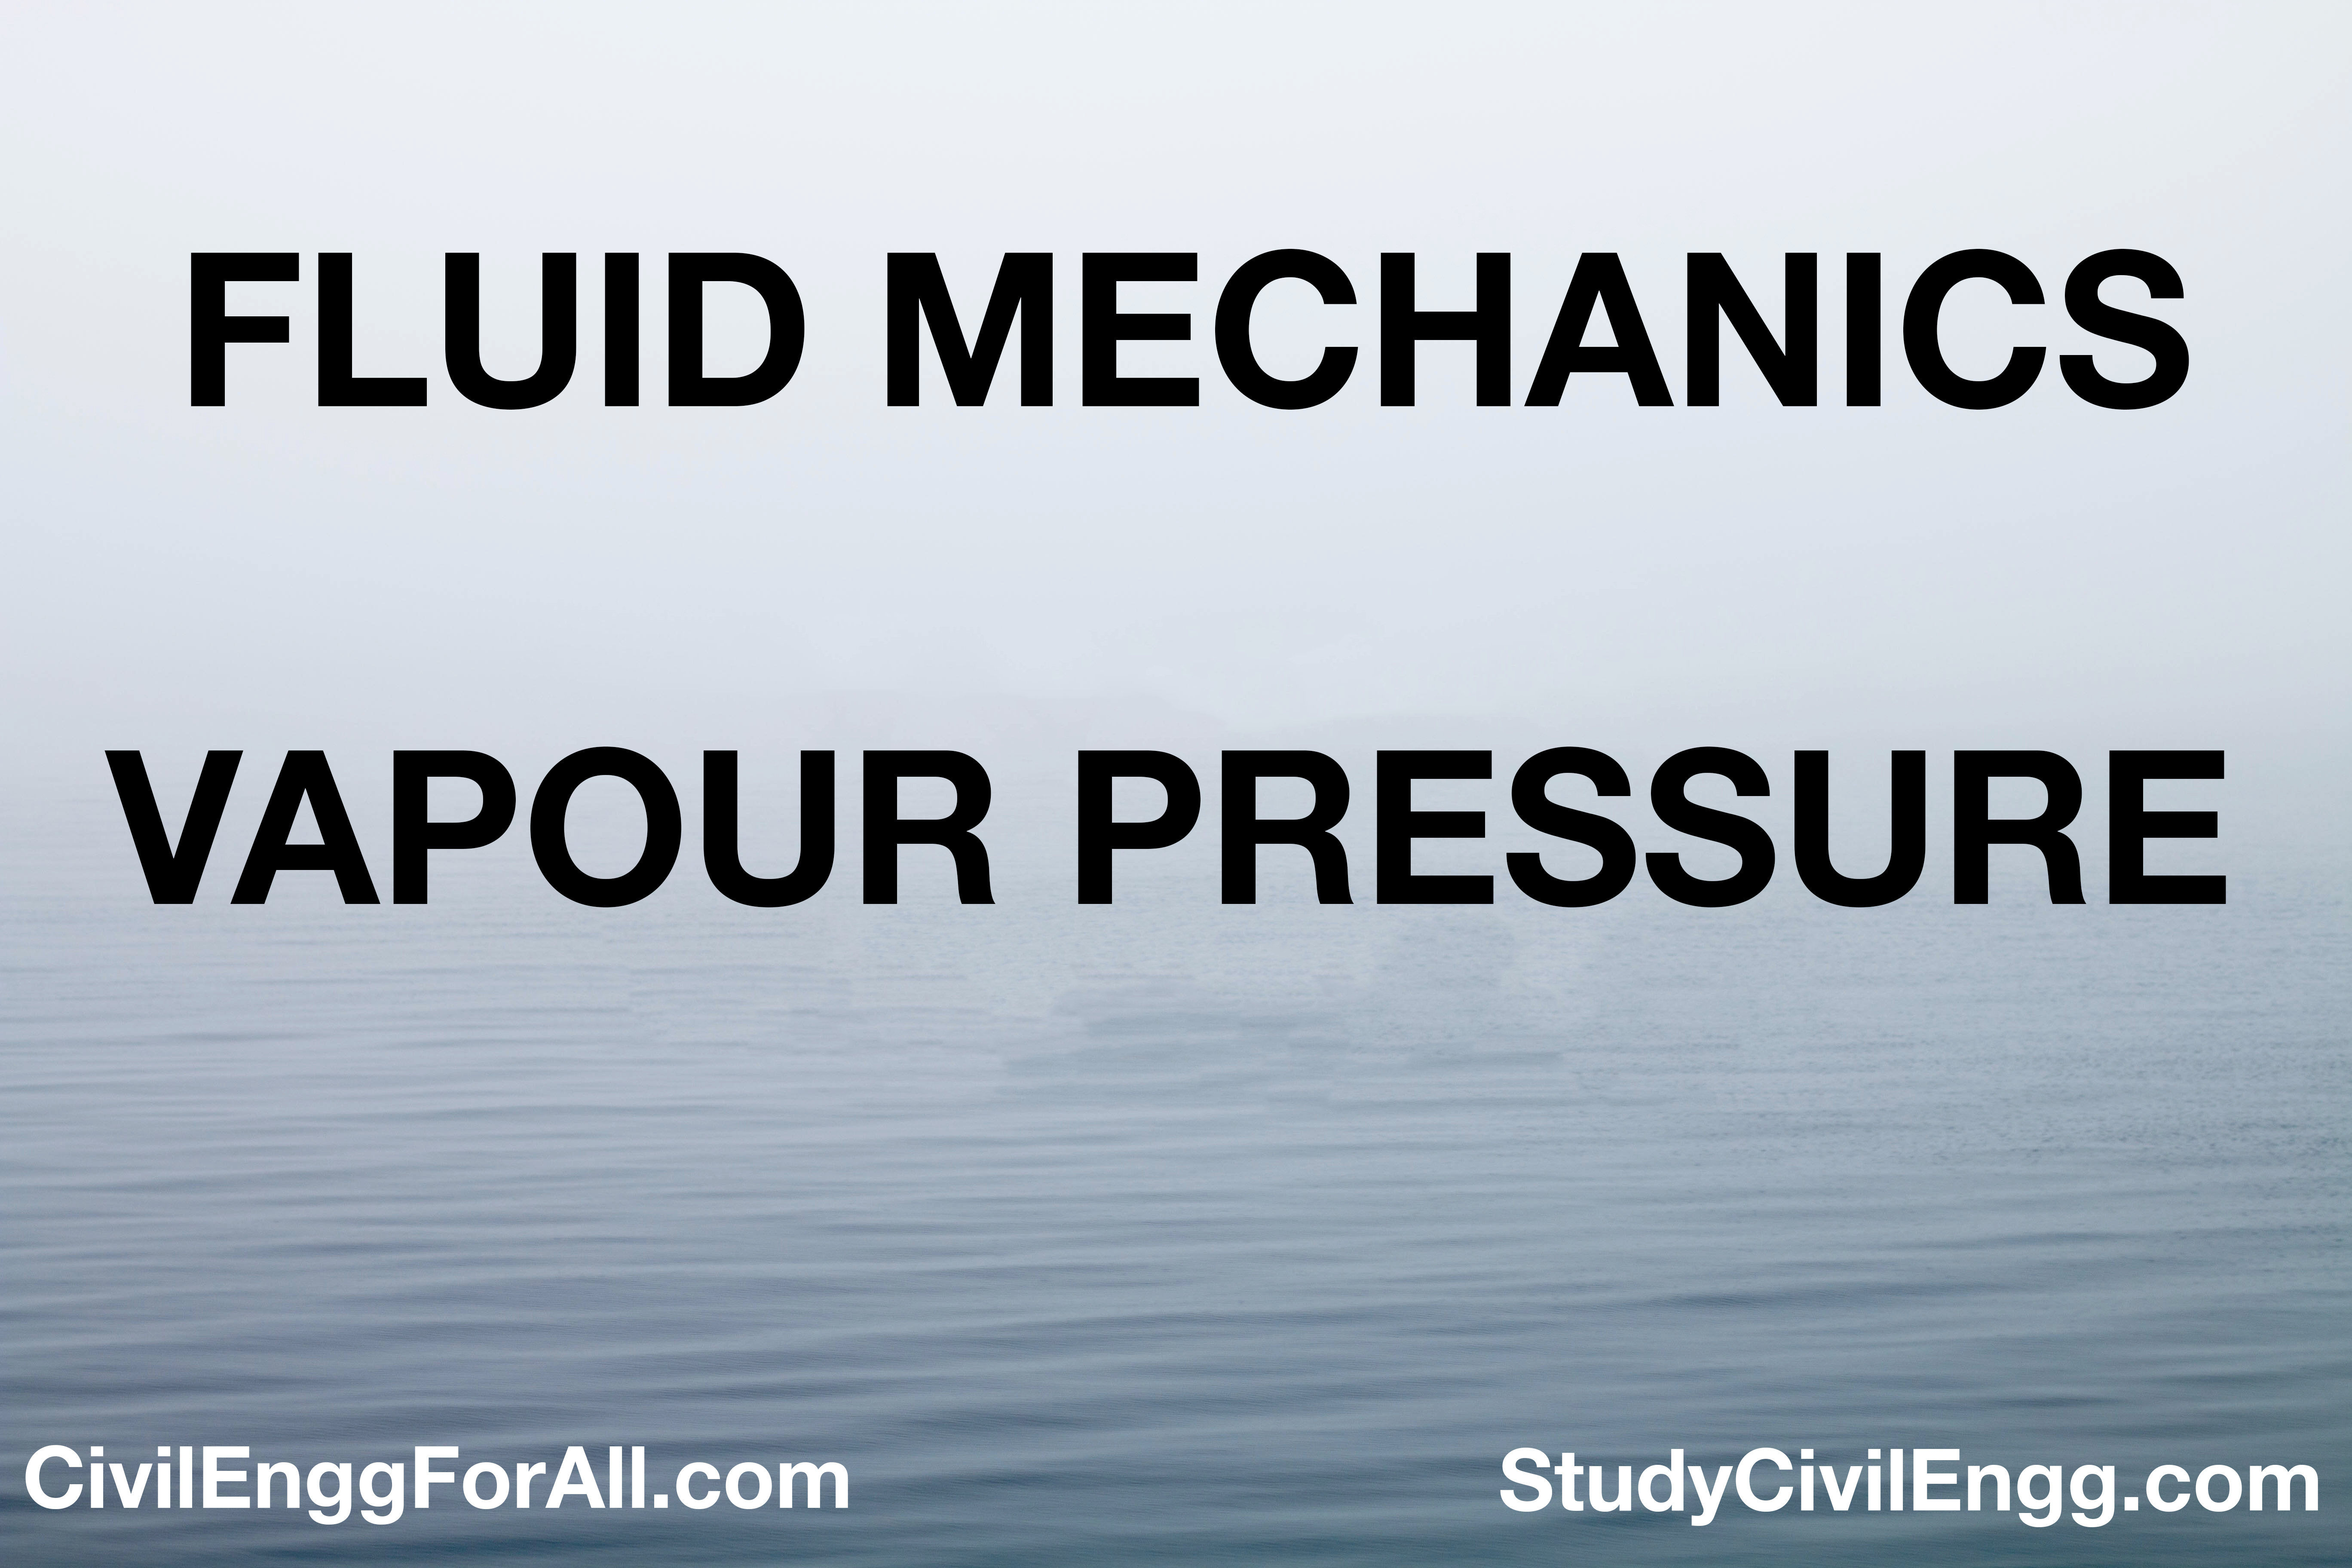 Vapour Pressure - Fluid Mechanics - StudyCivilEngg.com